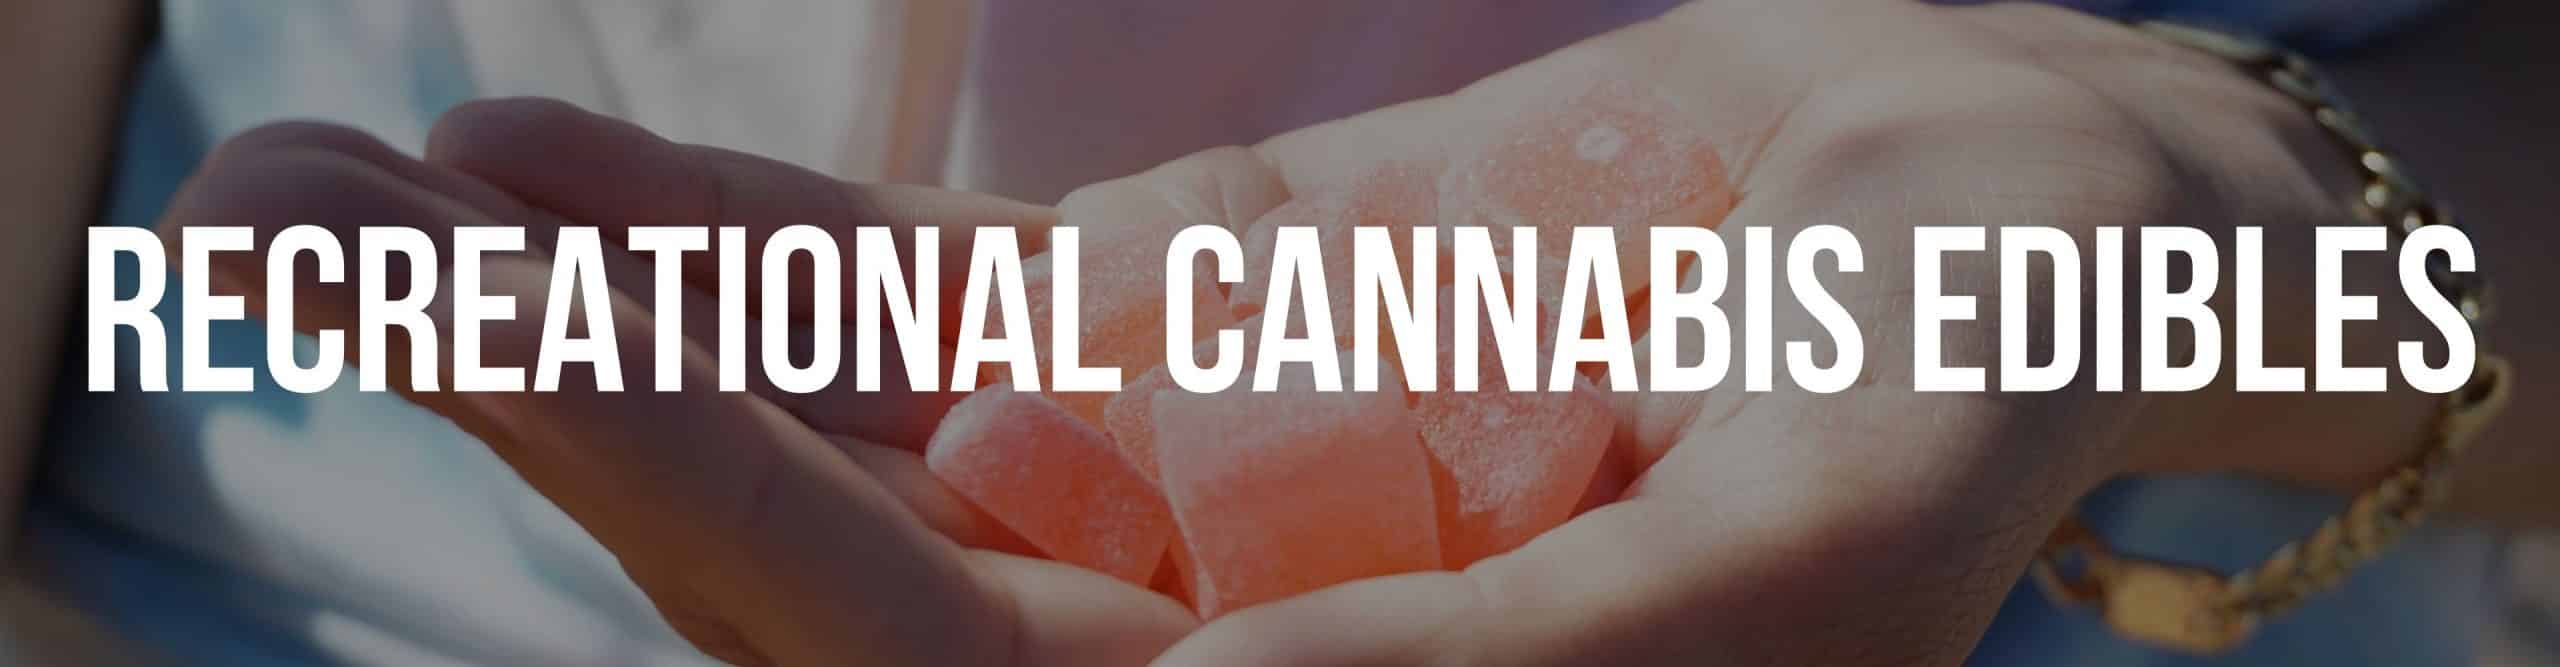 Recreational Cannabis Edibles In Denver and Aurora Colorado